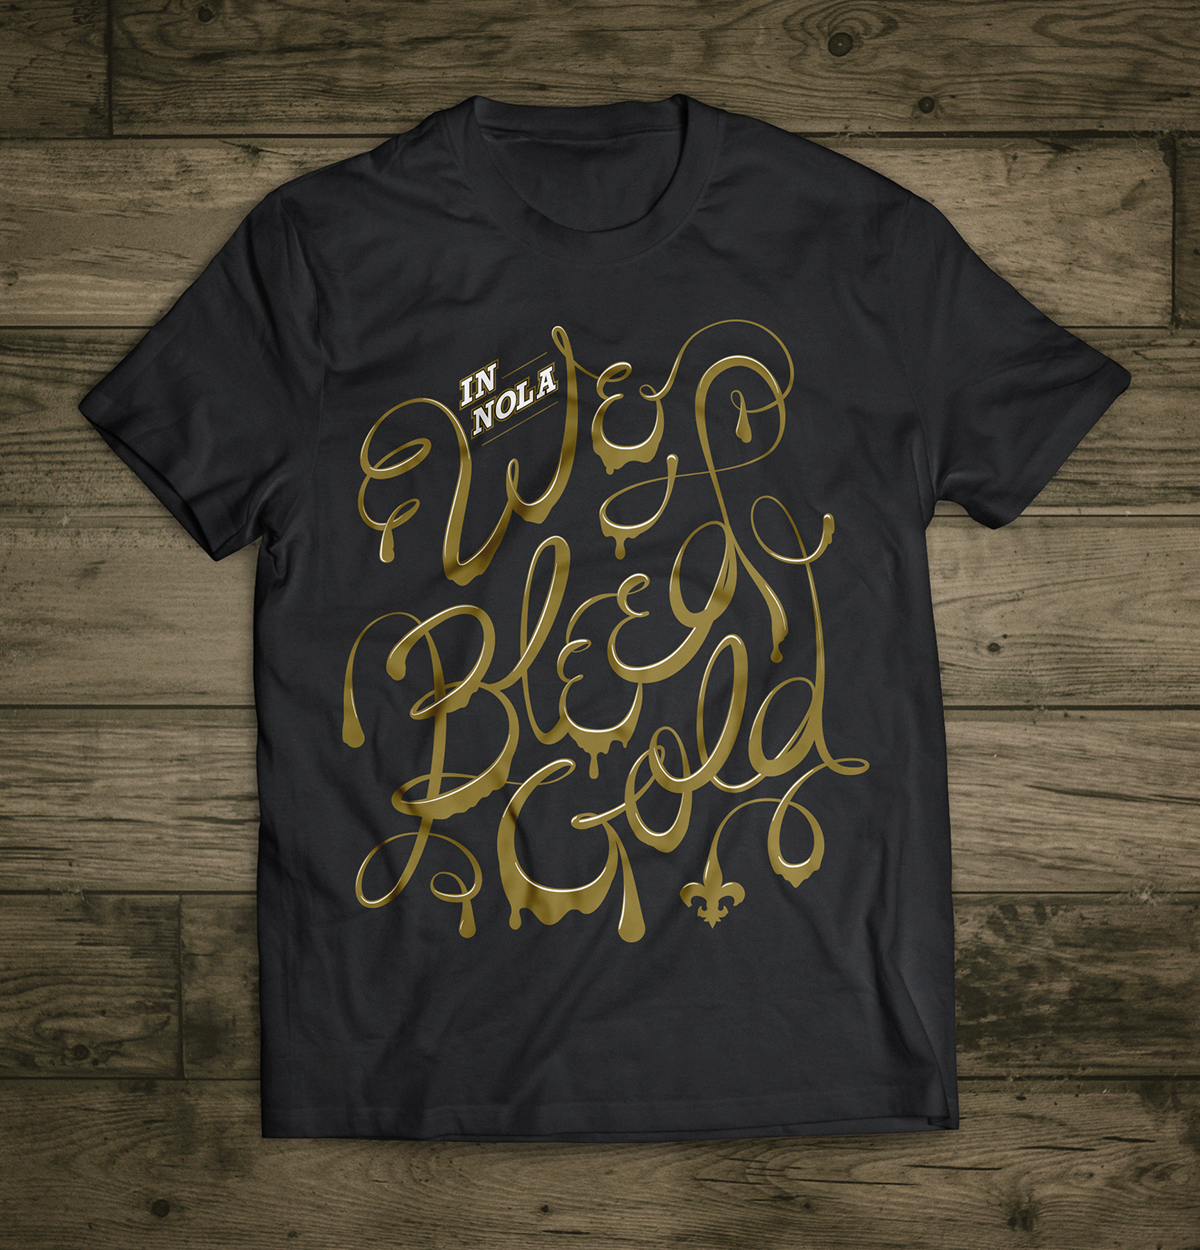 Bleed Gold T-Shirt on Behance